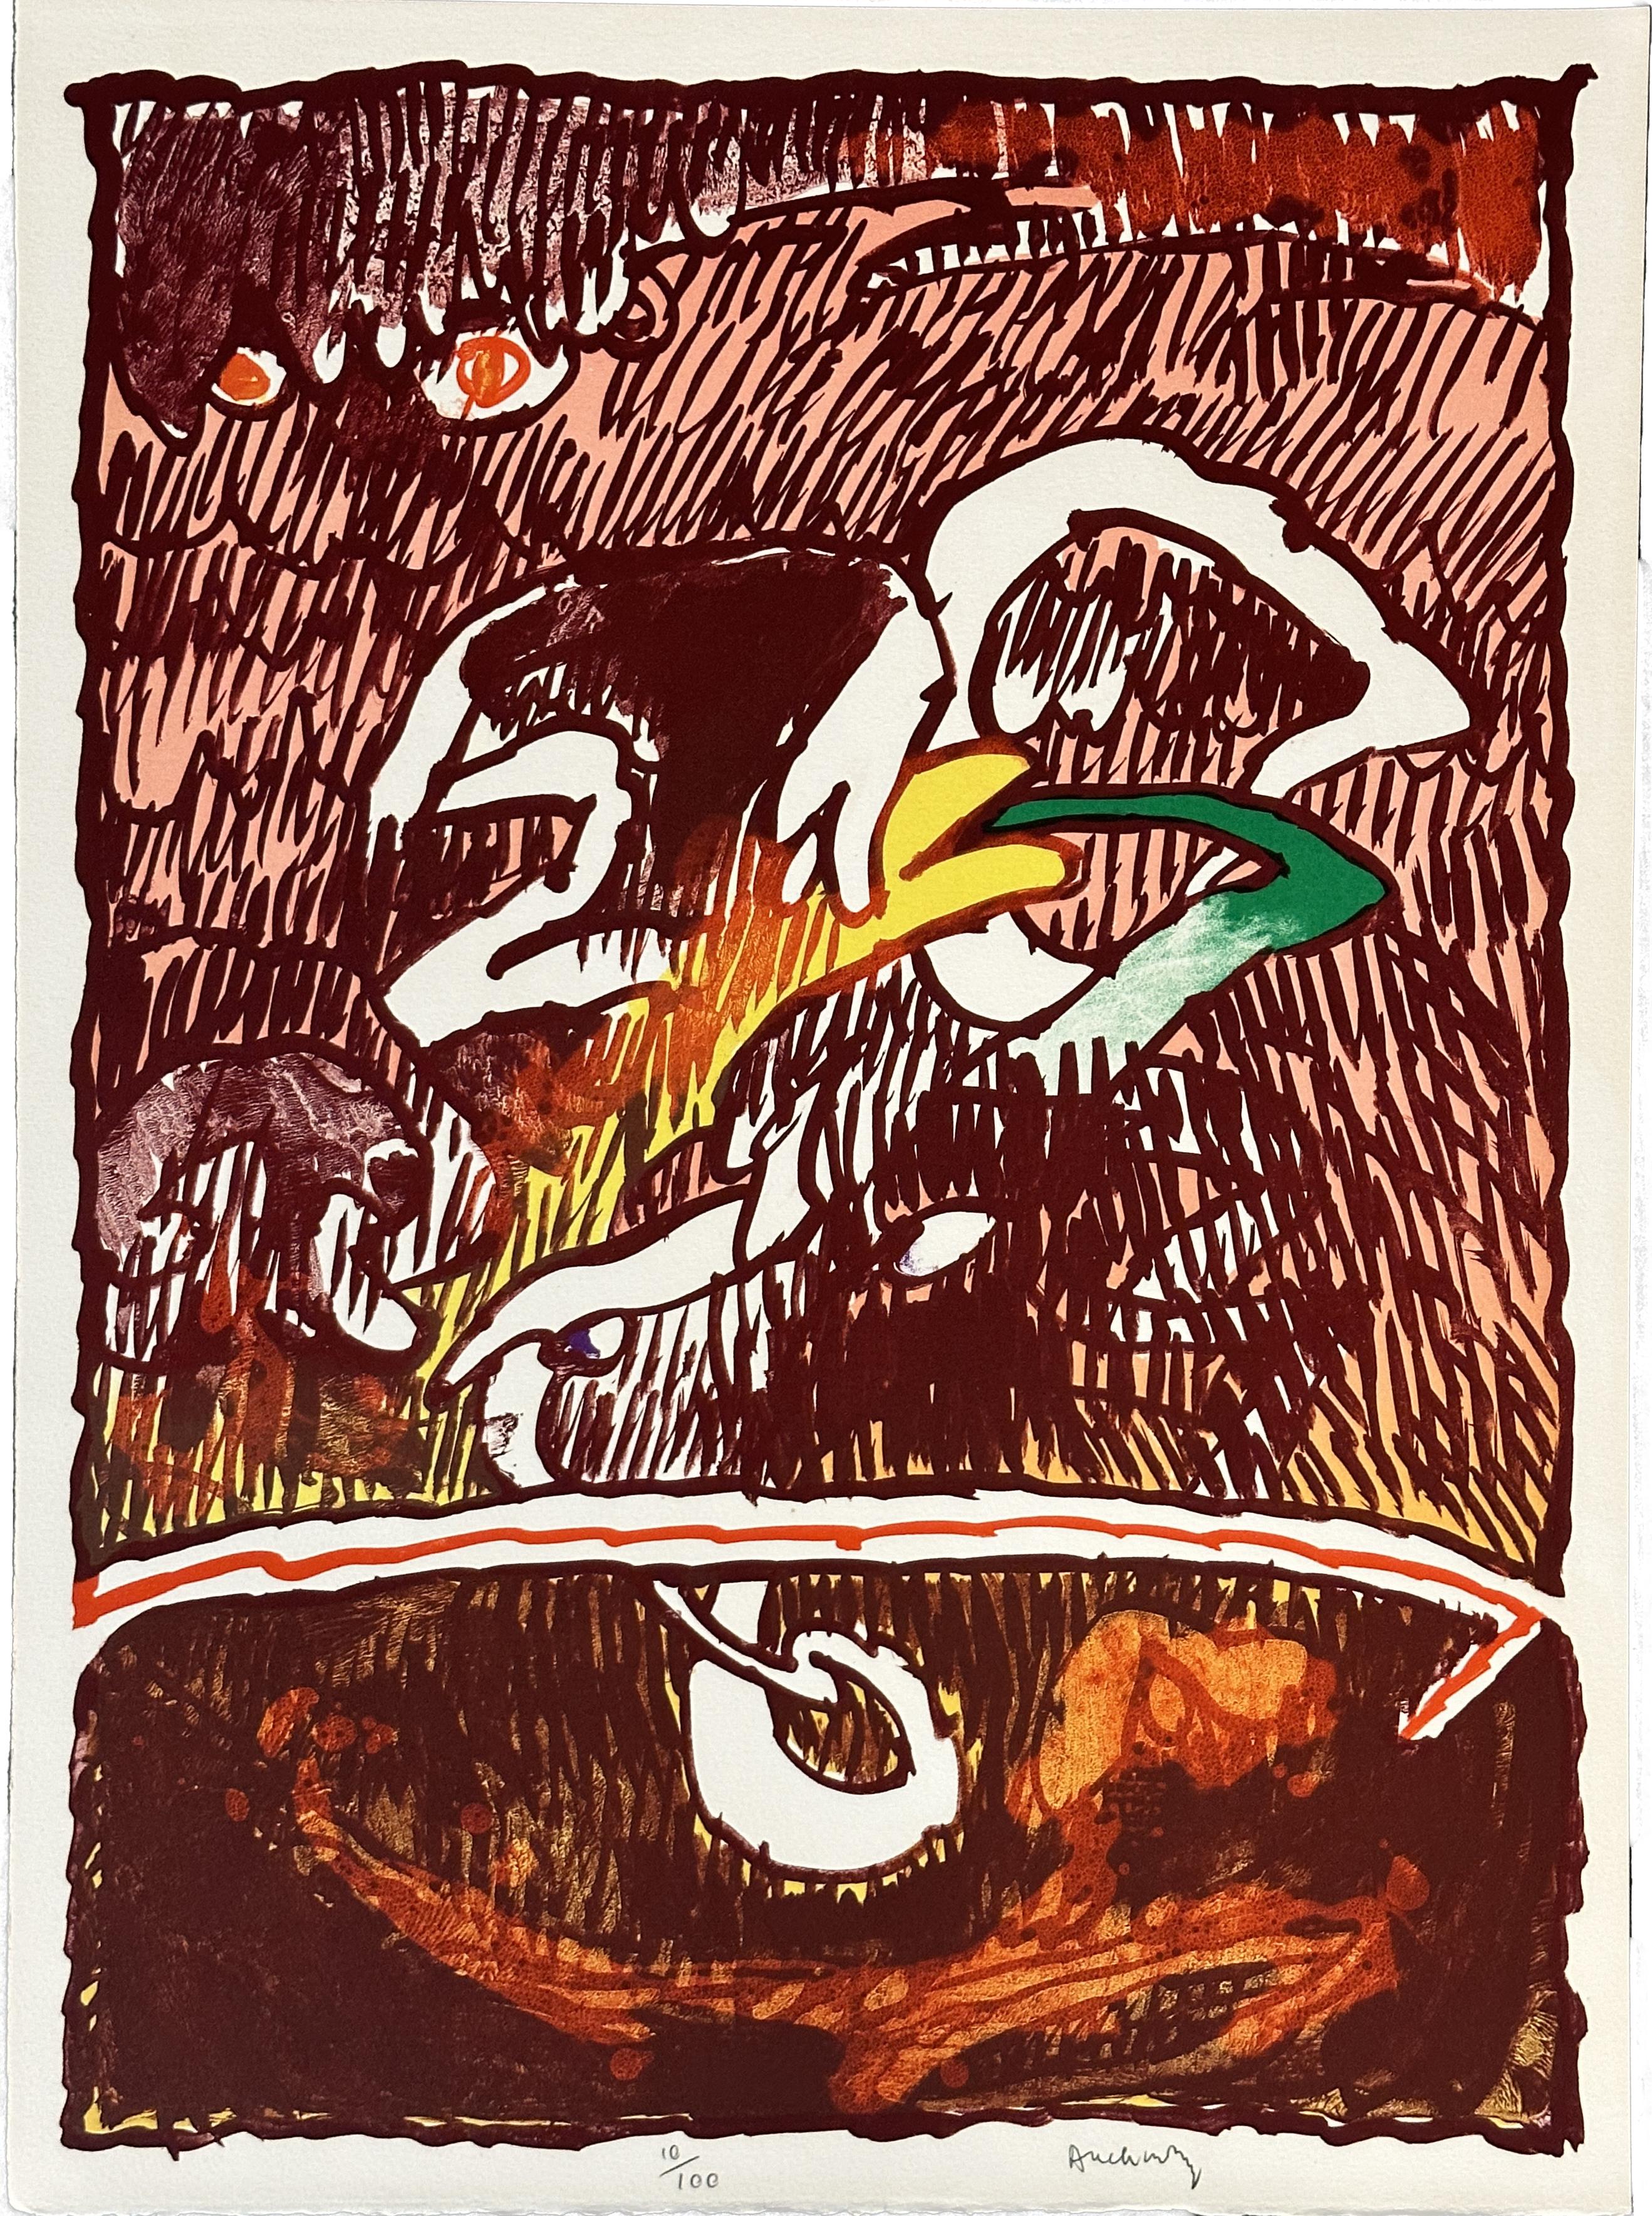 Abstract Print Pierre Alechinsky - Objet volant invisible, lithographie en édition limitée signée, 1978